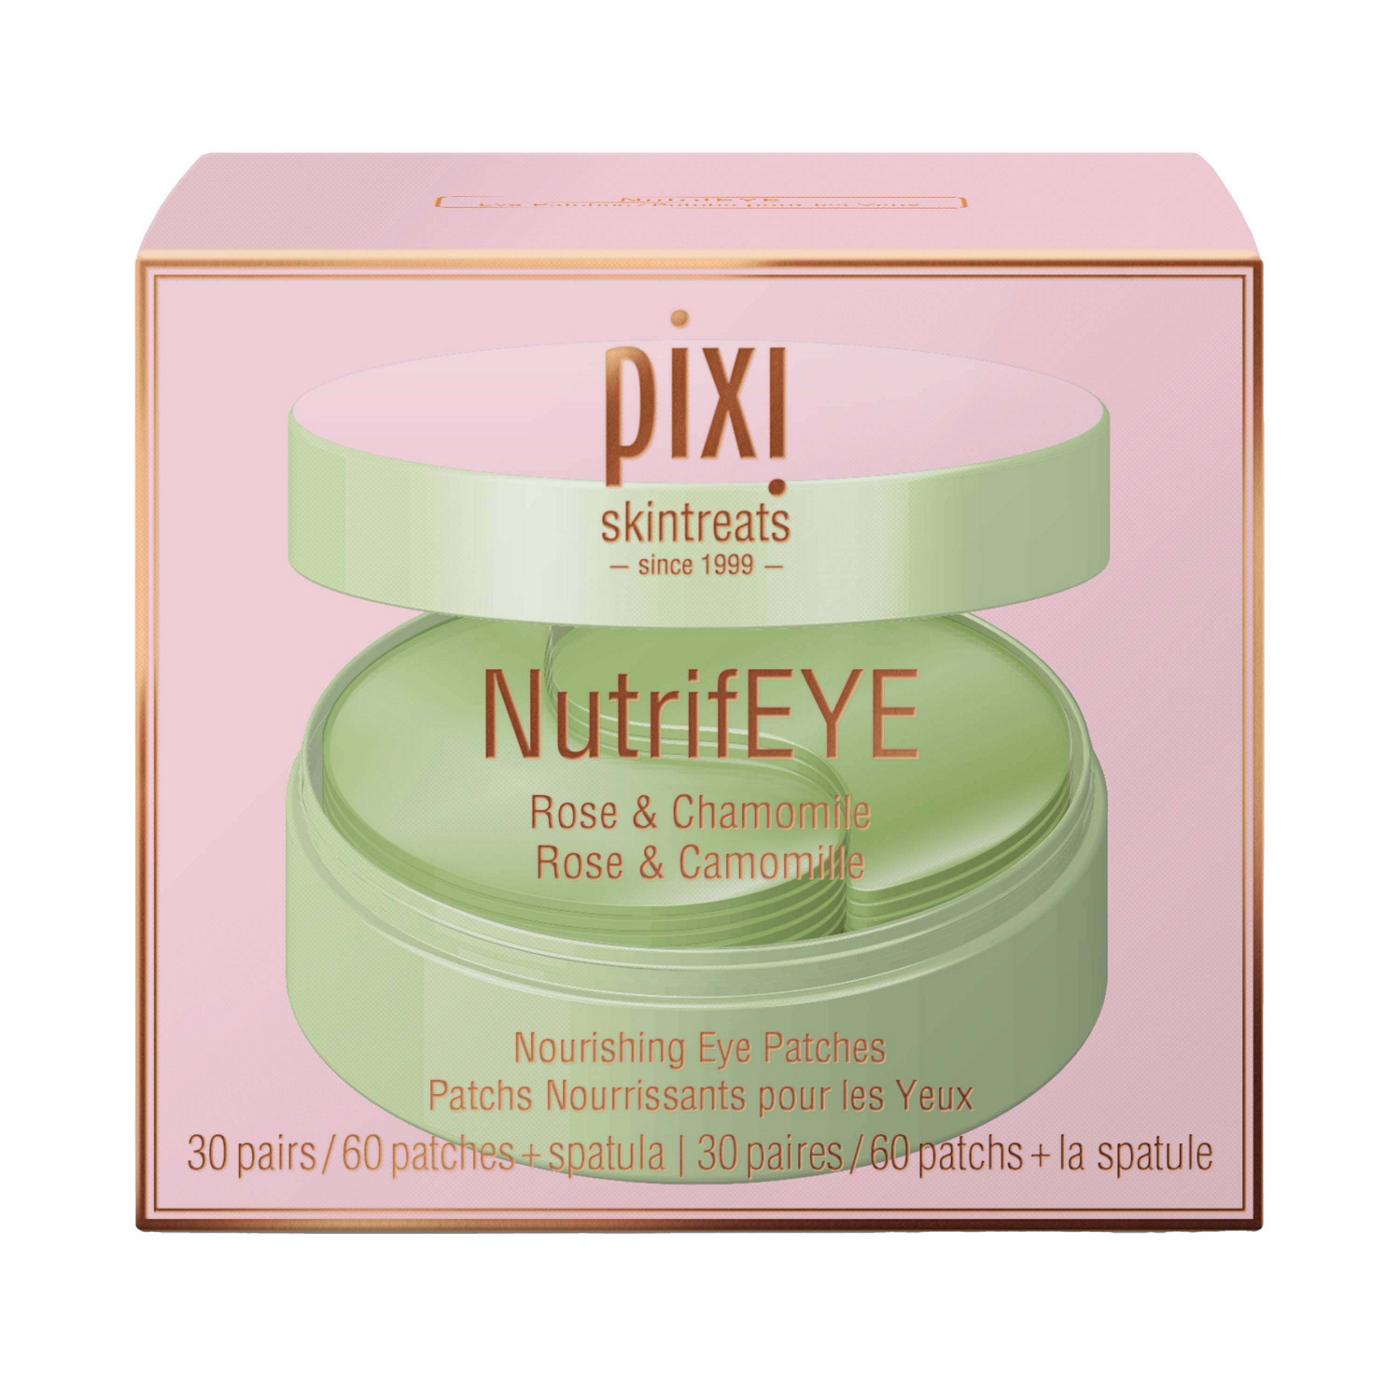 Pixi NutrifEye Nourishing Eye Patches - Rose & Chamomile; image 1 of 3